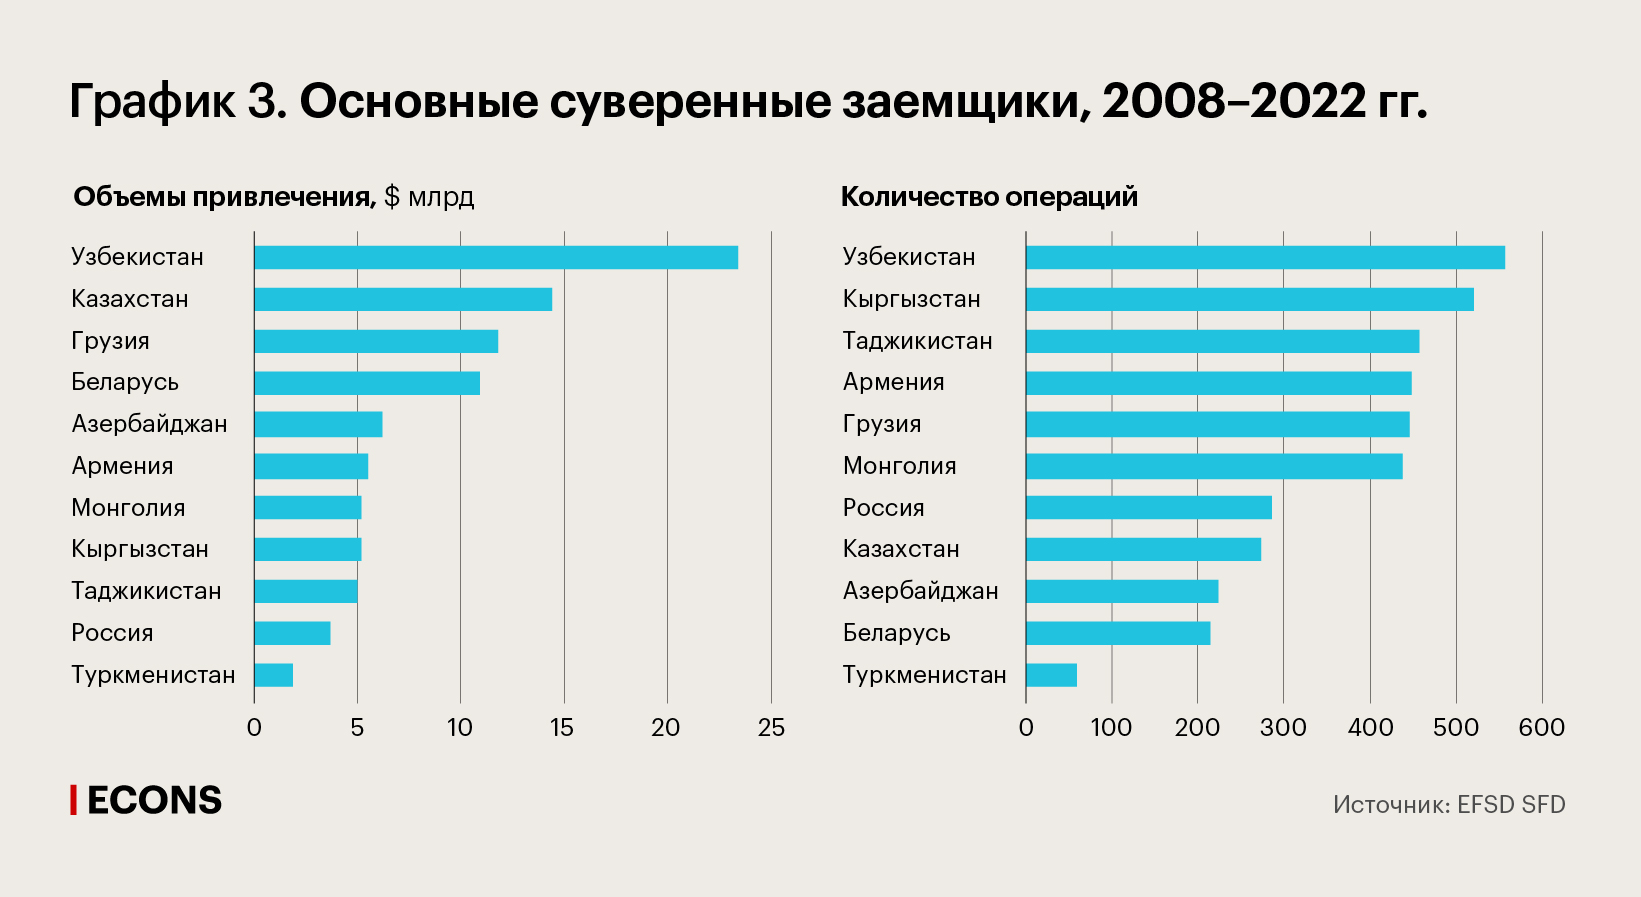 Основные суверенные заемщики, 2008–2022 гг.